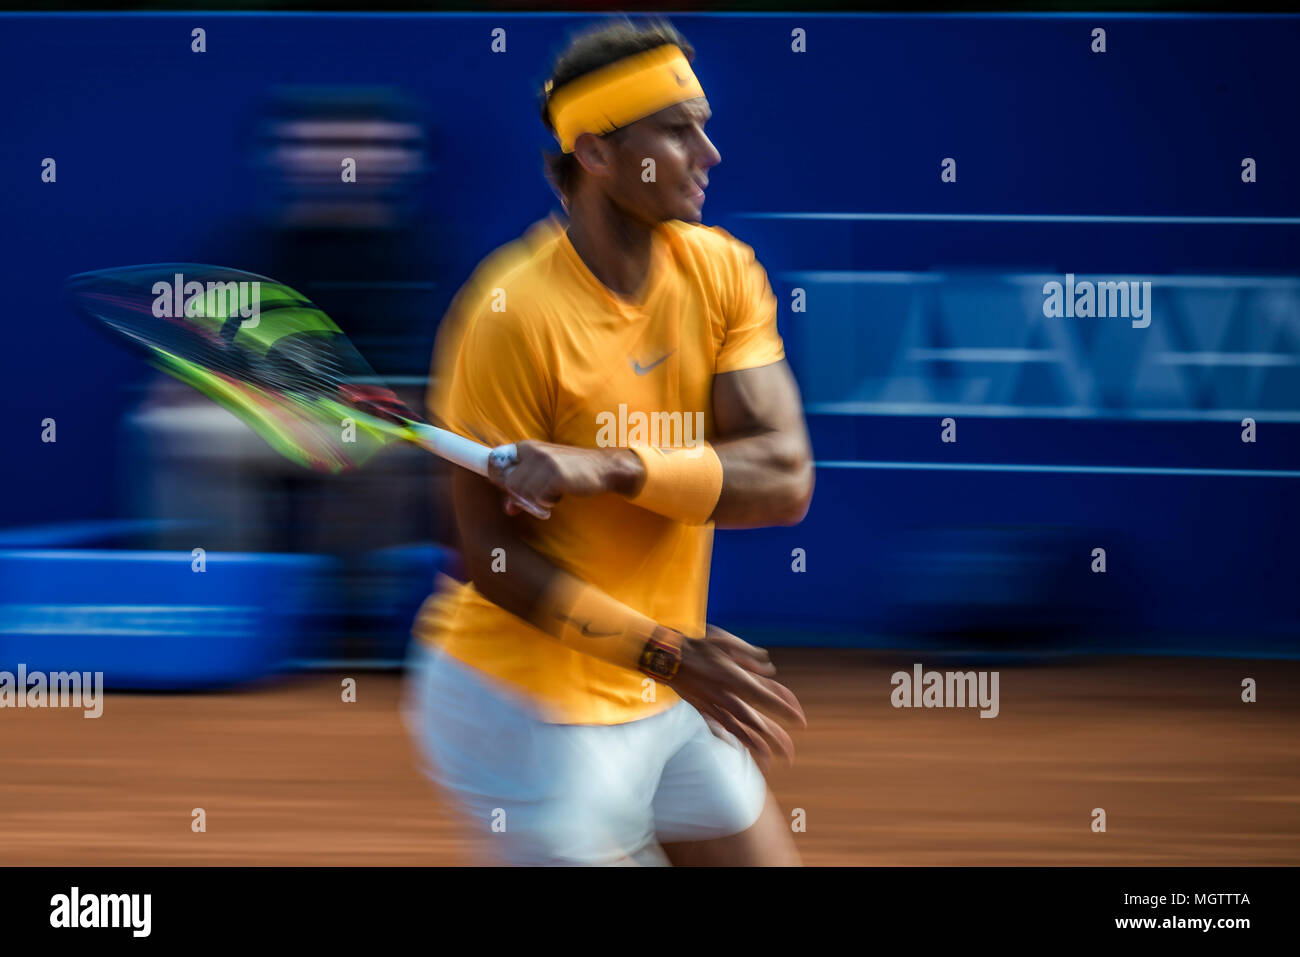 Barcellona, Spagna. 29 Aprile 2018: Rafael Nadal (ESP) restituisce la palla a Stefanos Tsitsipas (GRE) nel finale di 'Barcelona Open Banc Sabadell' 2018. Nadal ha vinto 6:2, 6:1 Foto Stock